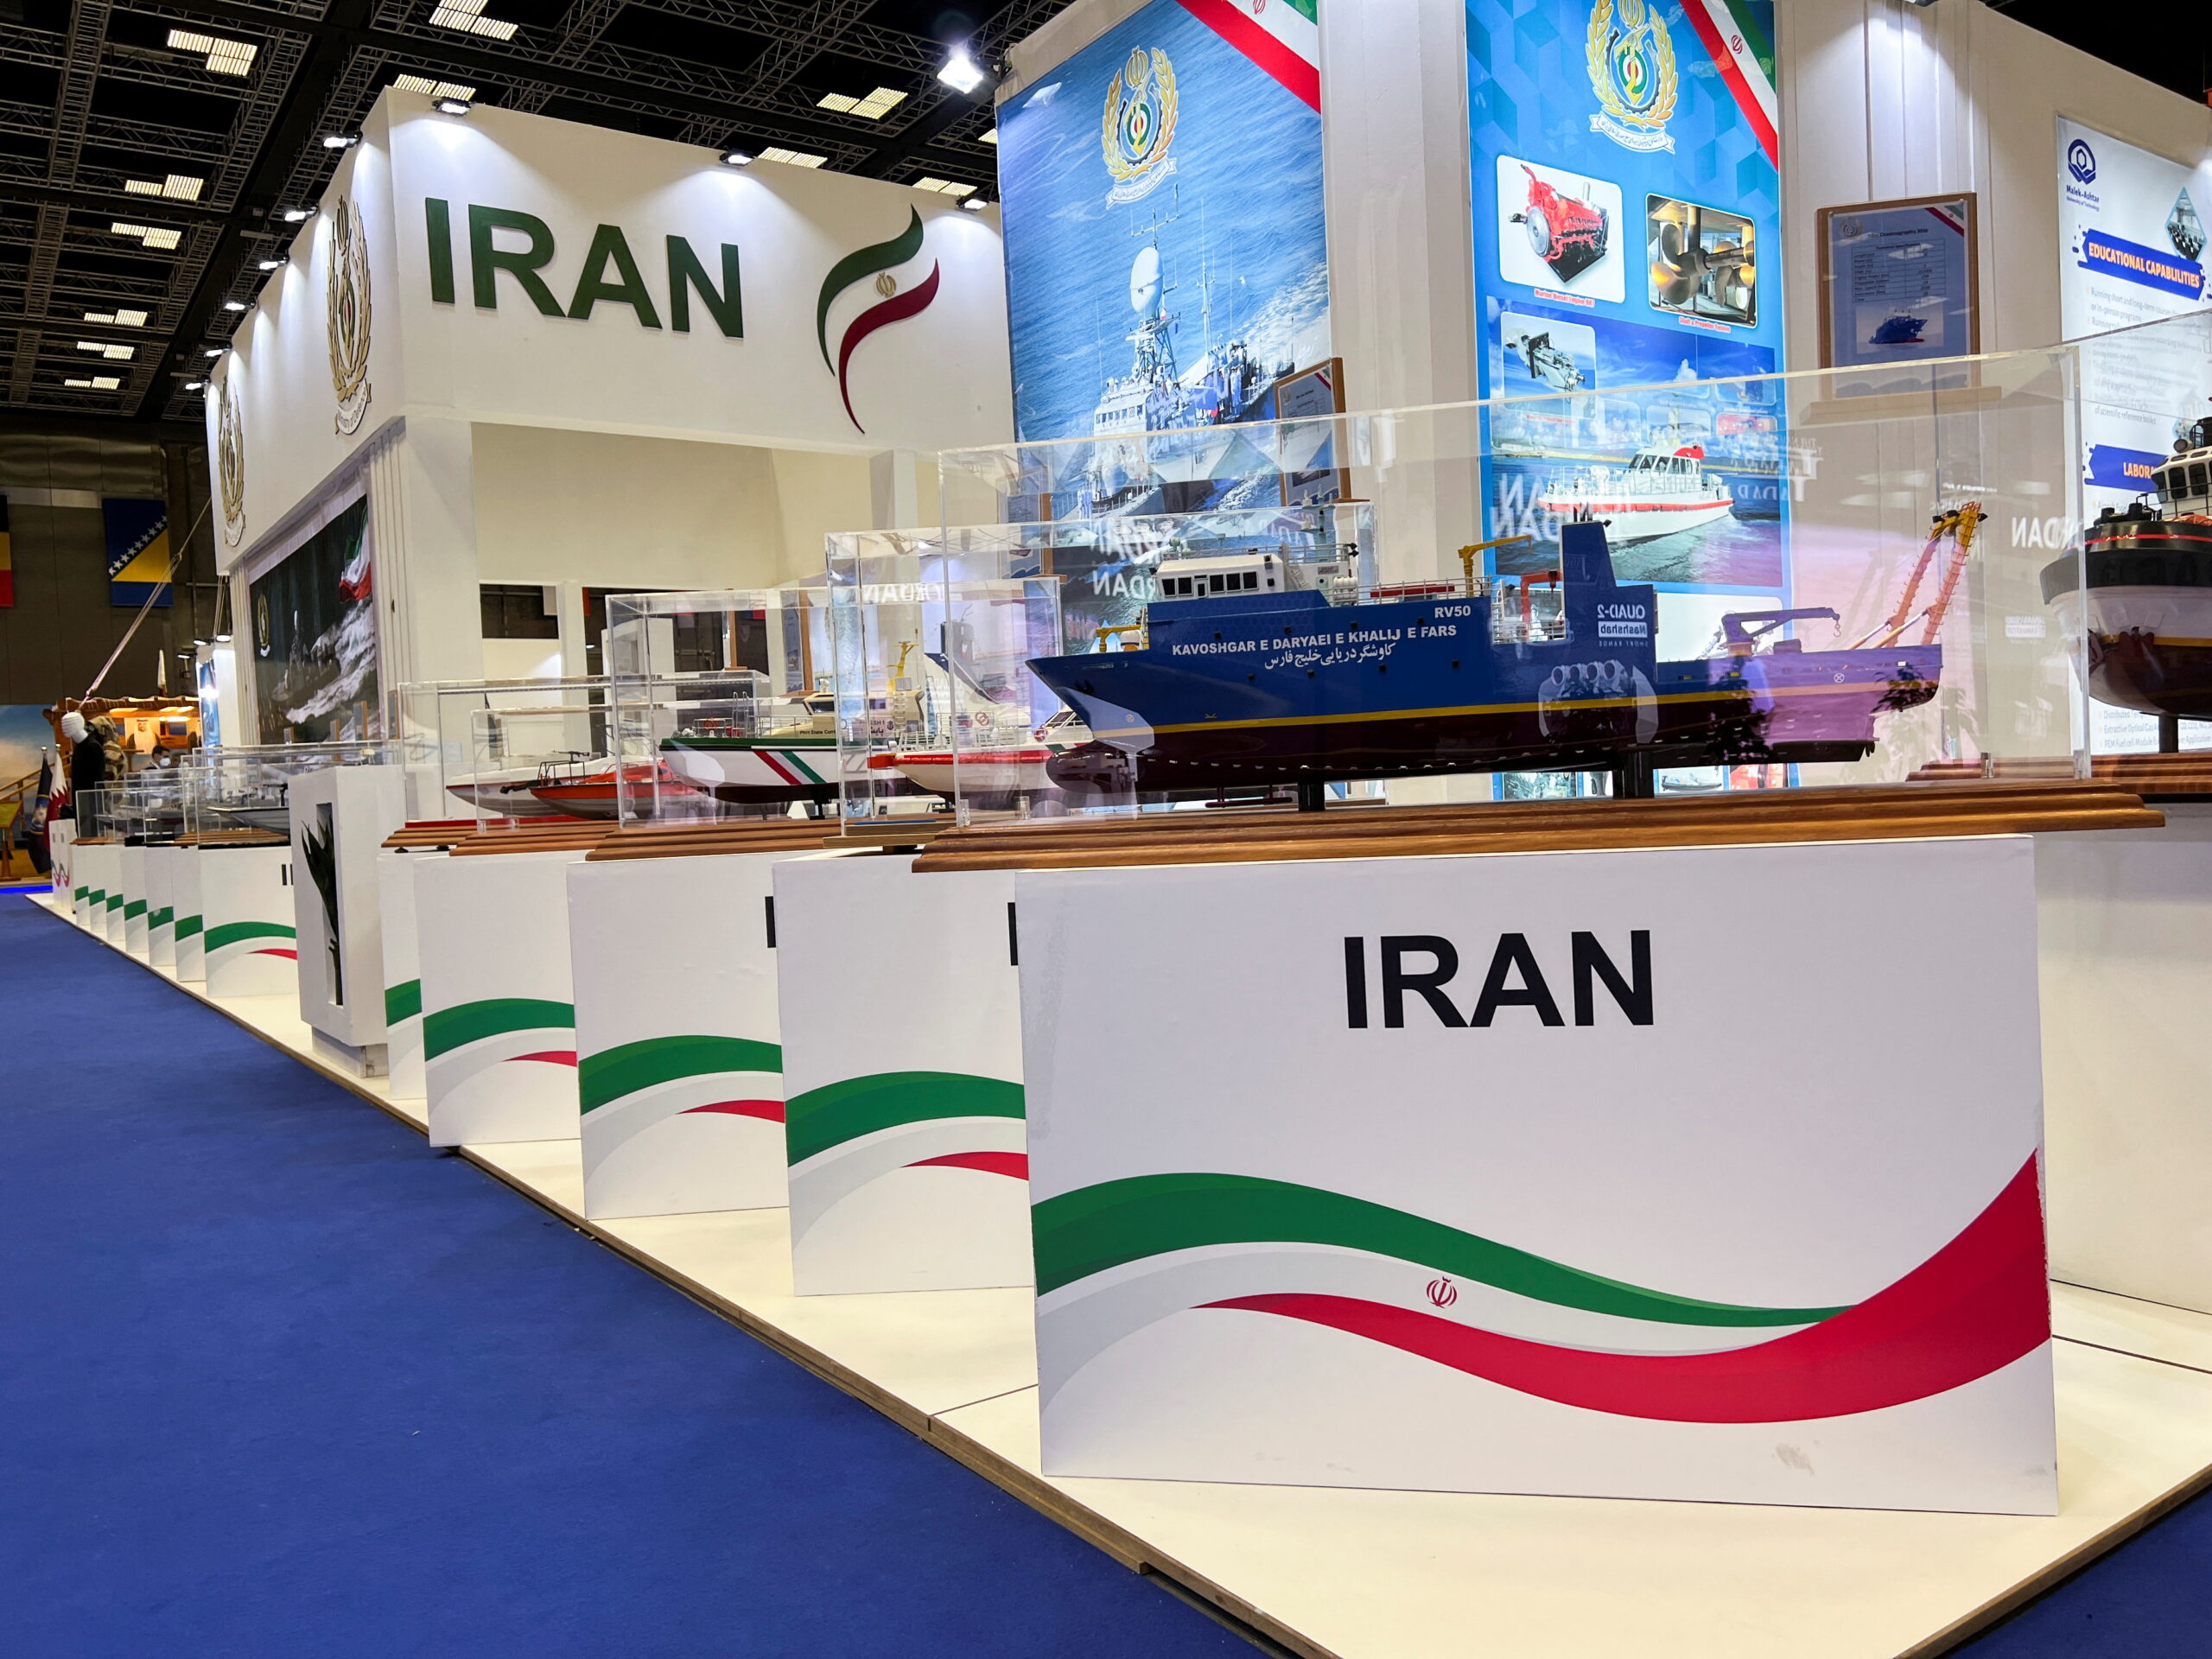 وزارت خارجه آمریکا از حضور سپاه پاسداران ایران در نمایشگاه نظامی دوحه انتقاد کرد